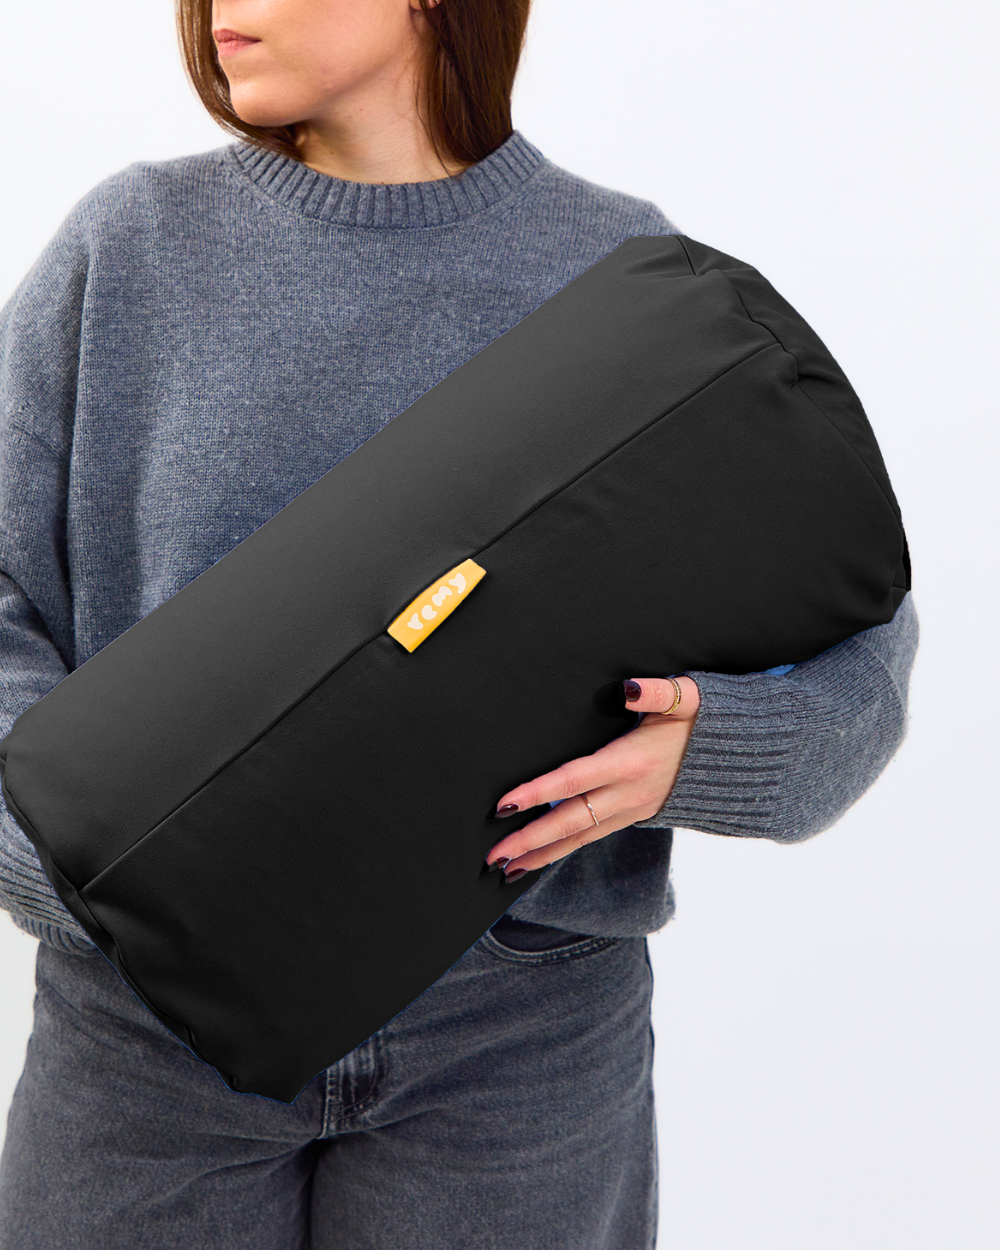 The Pod Pillow